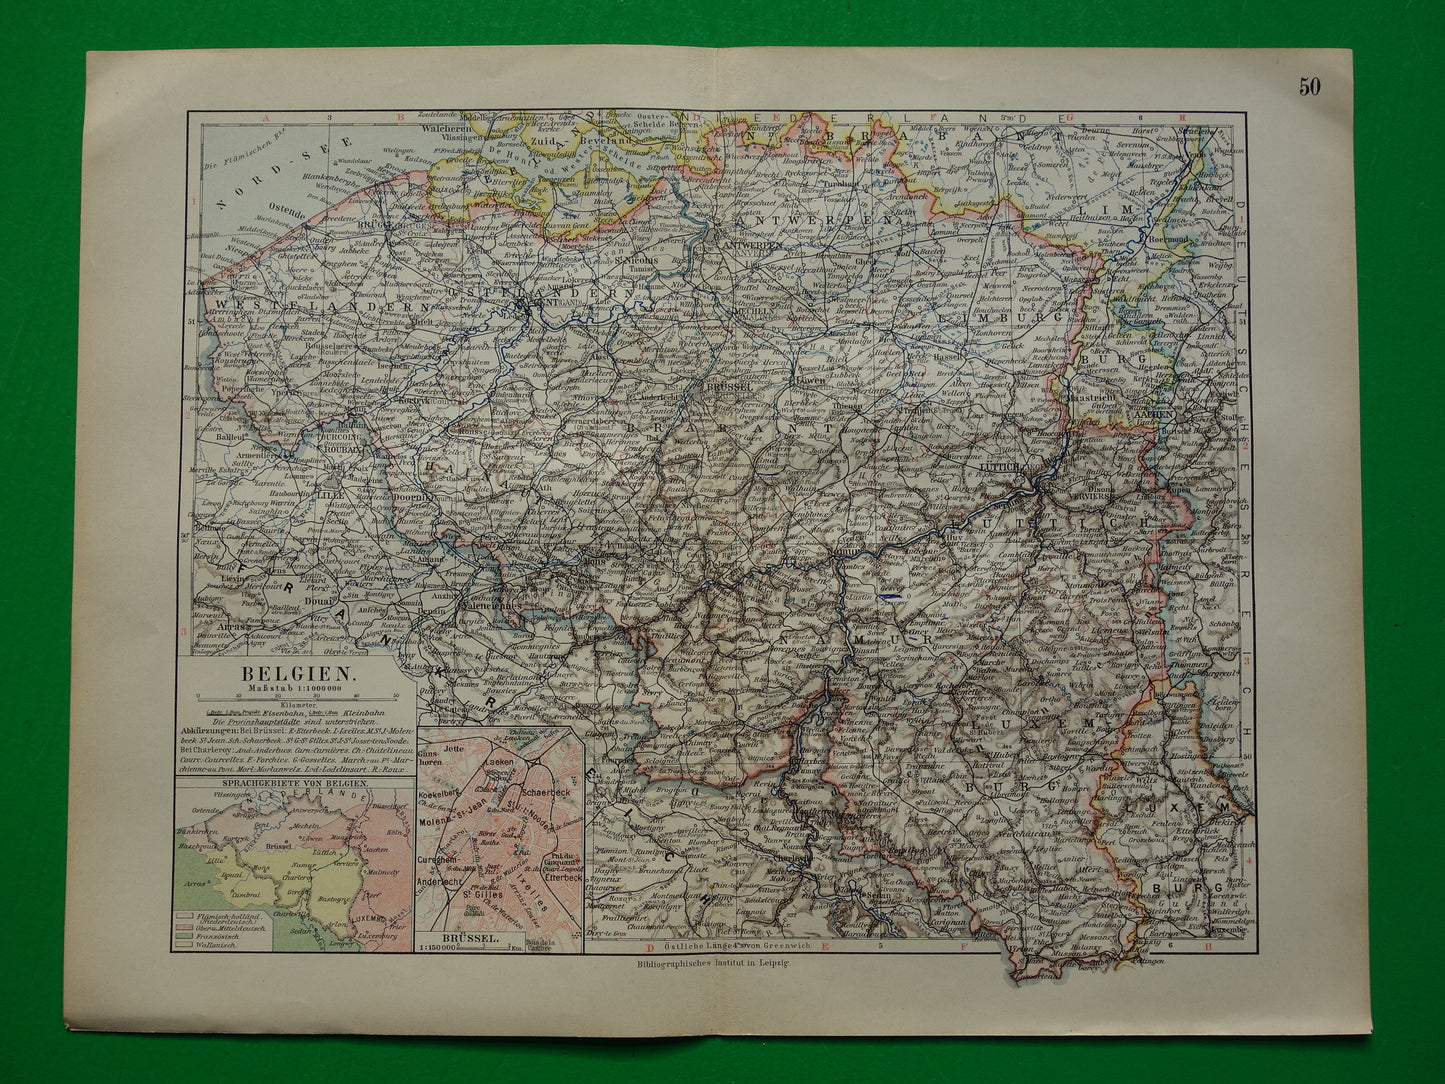 BELGIE vintage landkaart van België uit 1905 originele oude antieke Duitse kaart van België